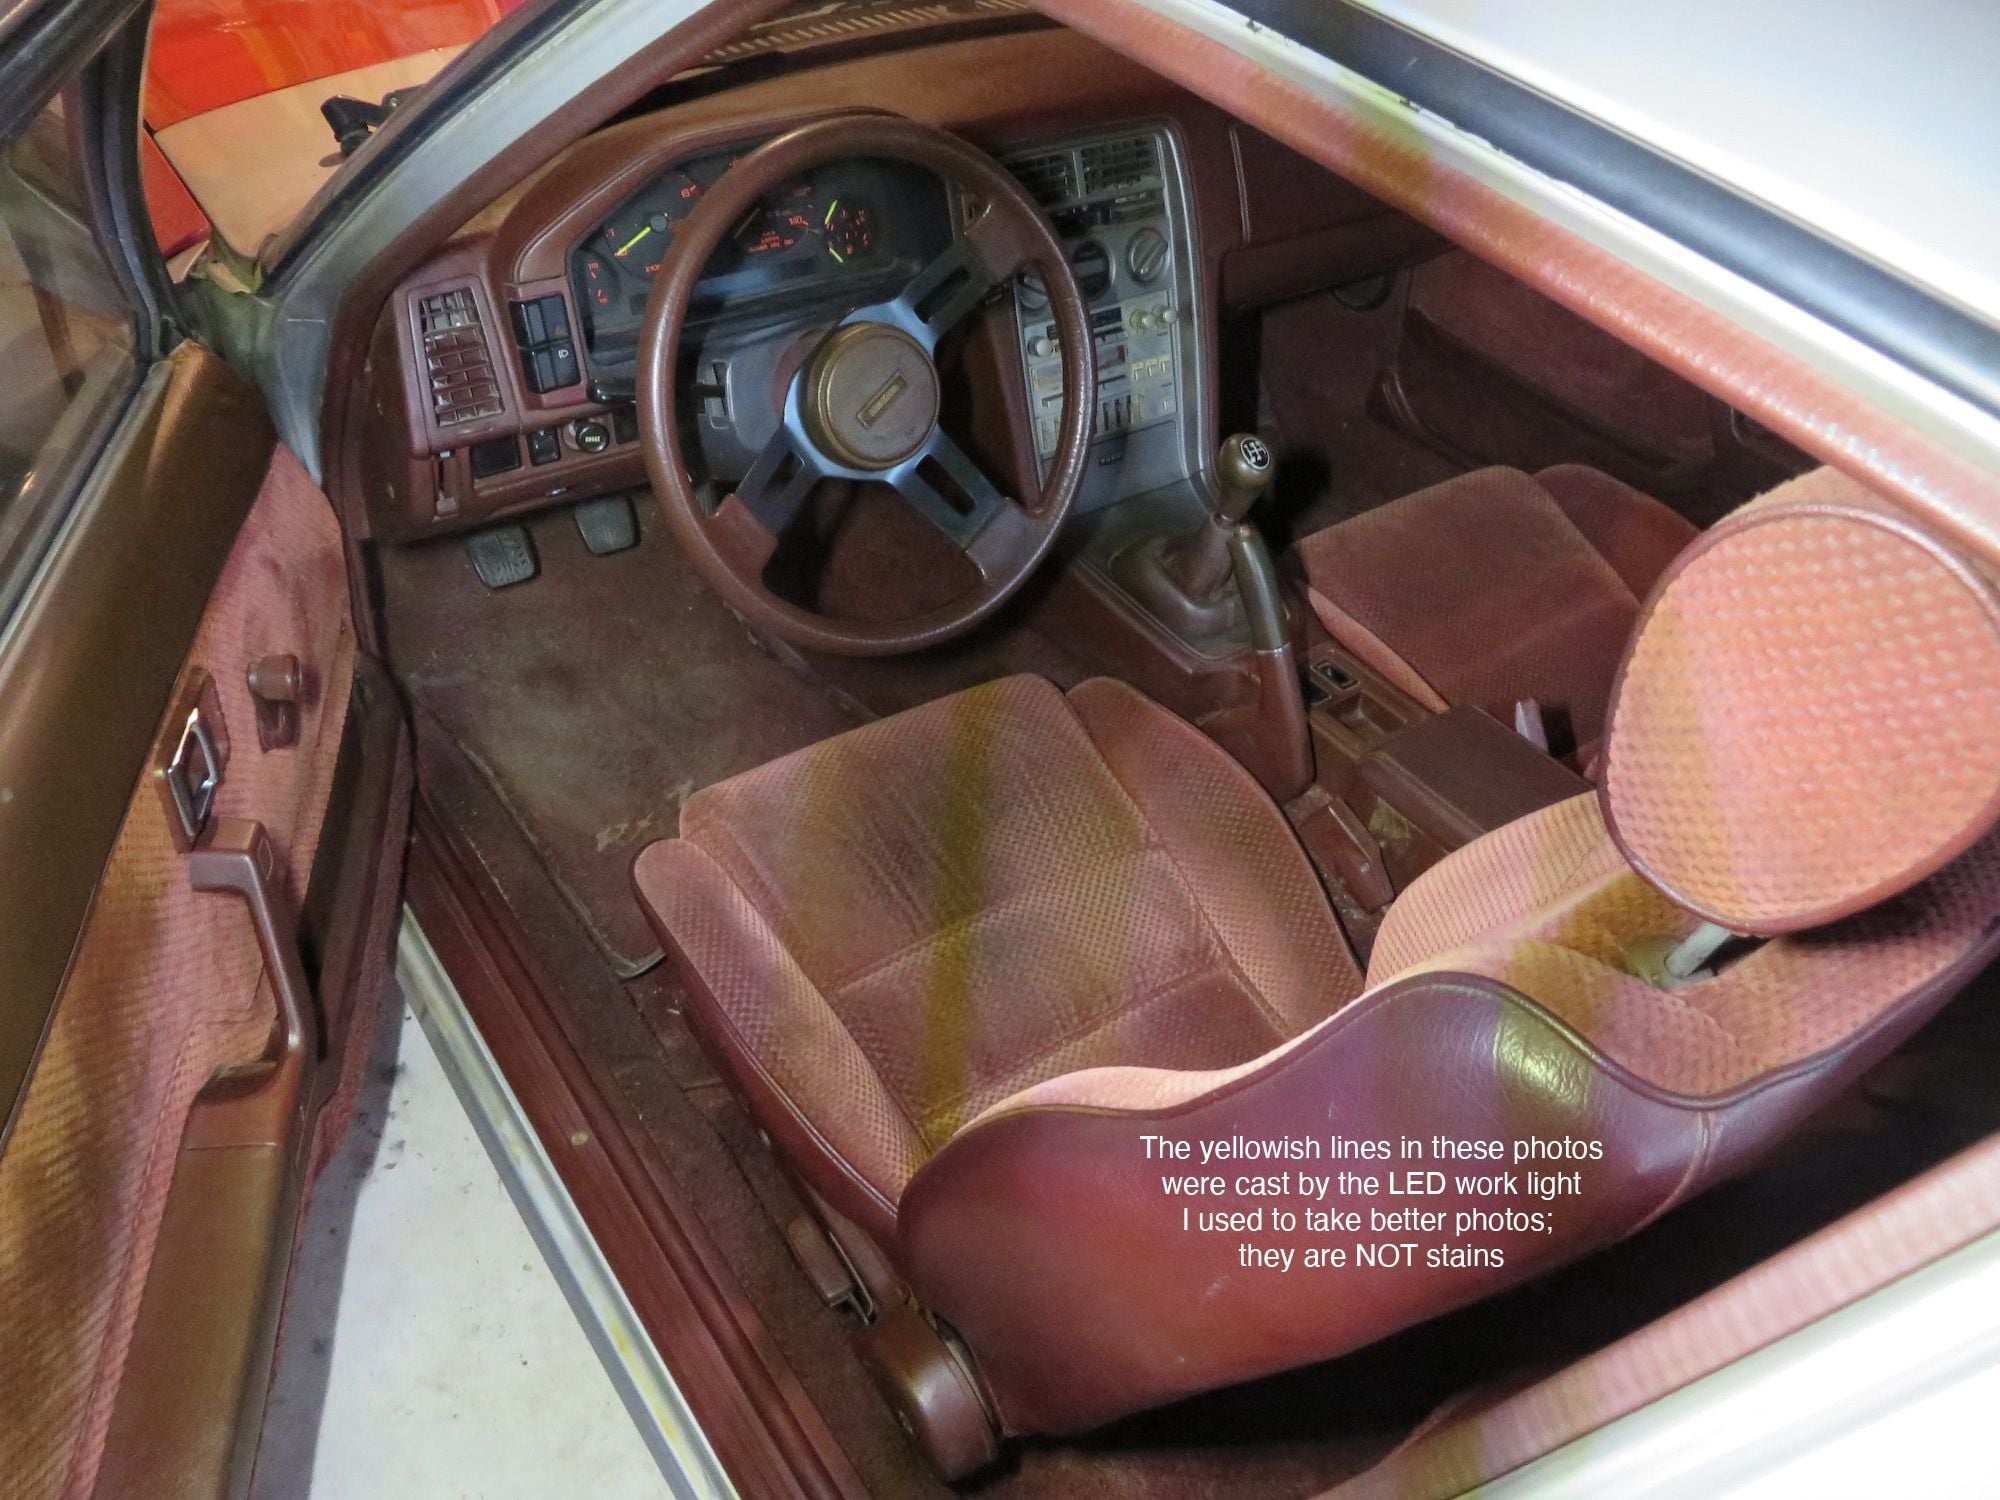 1985 Mazda RX-7 - '85 "Garage Find" for sale; last ran in 2013 - Used - VIN JM1FB3316F0909492 - 126,325 Miles - Other - 2WD - Manual - Hatchback - Silver - Detroit, MI 48216, United States